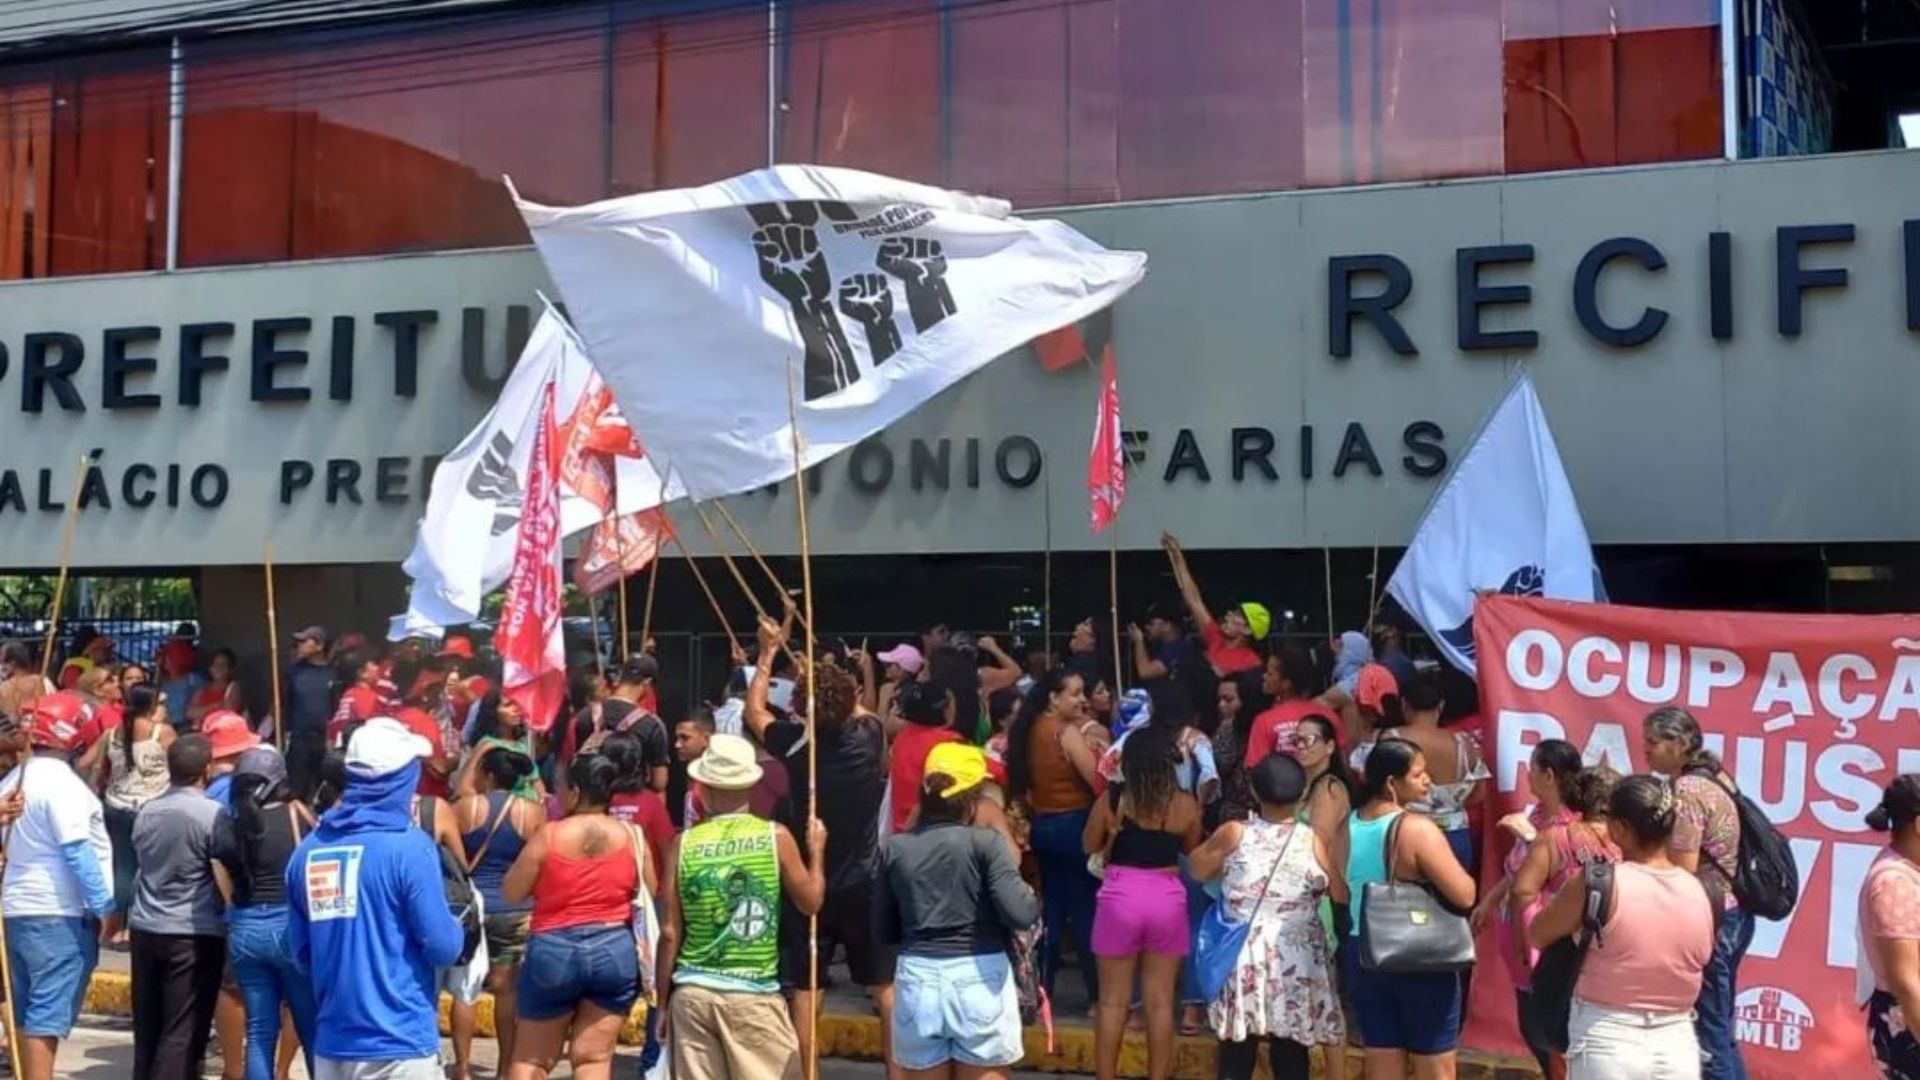 Protesto em frente da Prefeitura do Recife cobra moradia para famílias de ocupação.